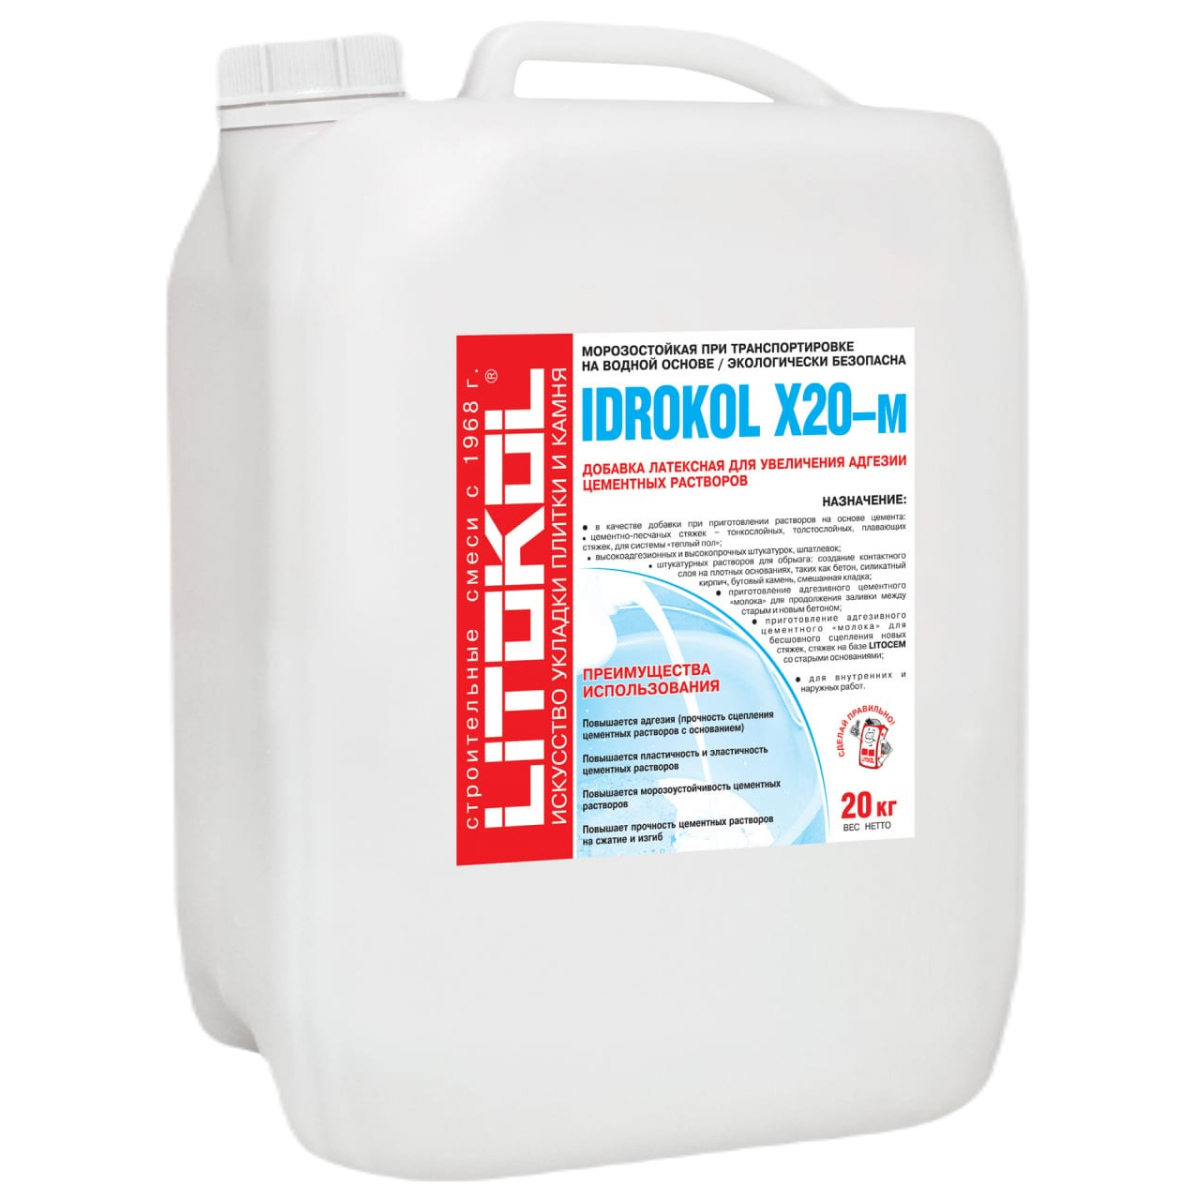 фото Litokol idrokol x20-м-латексная добавка 20kg can 119300003